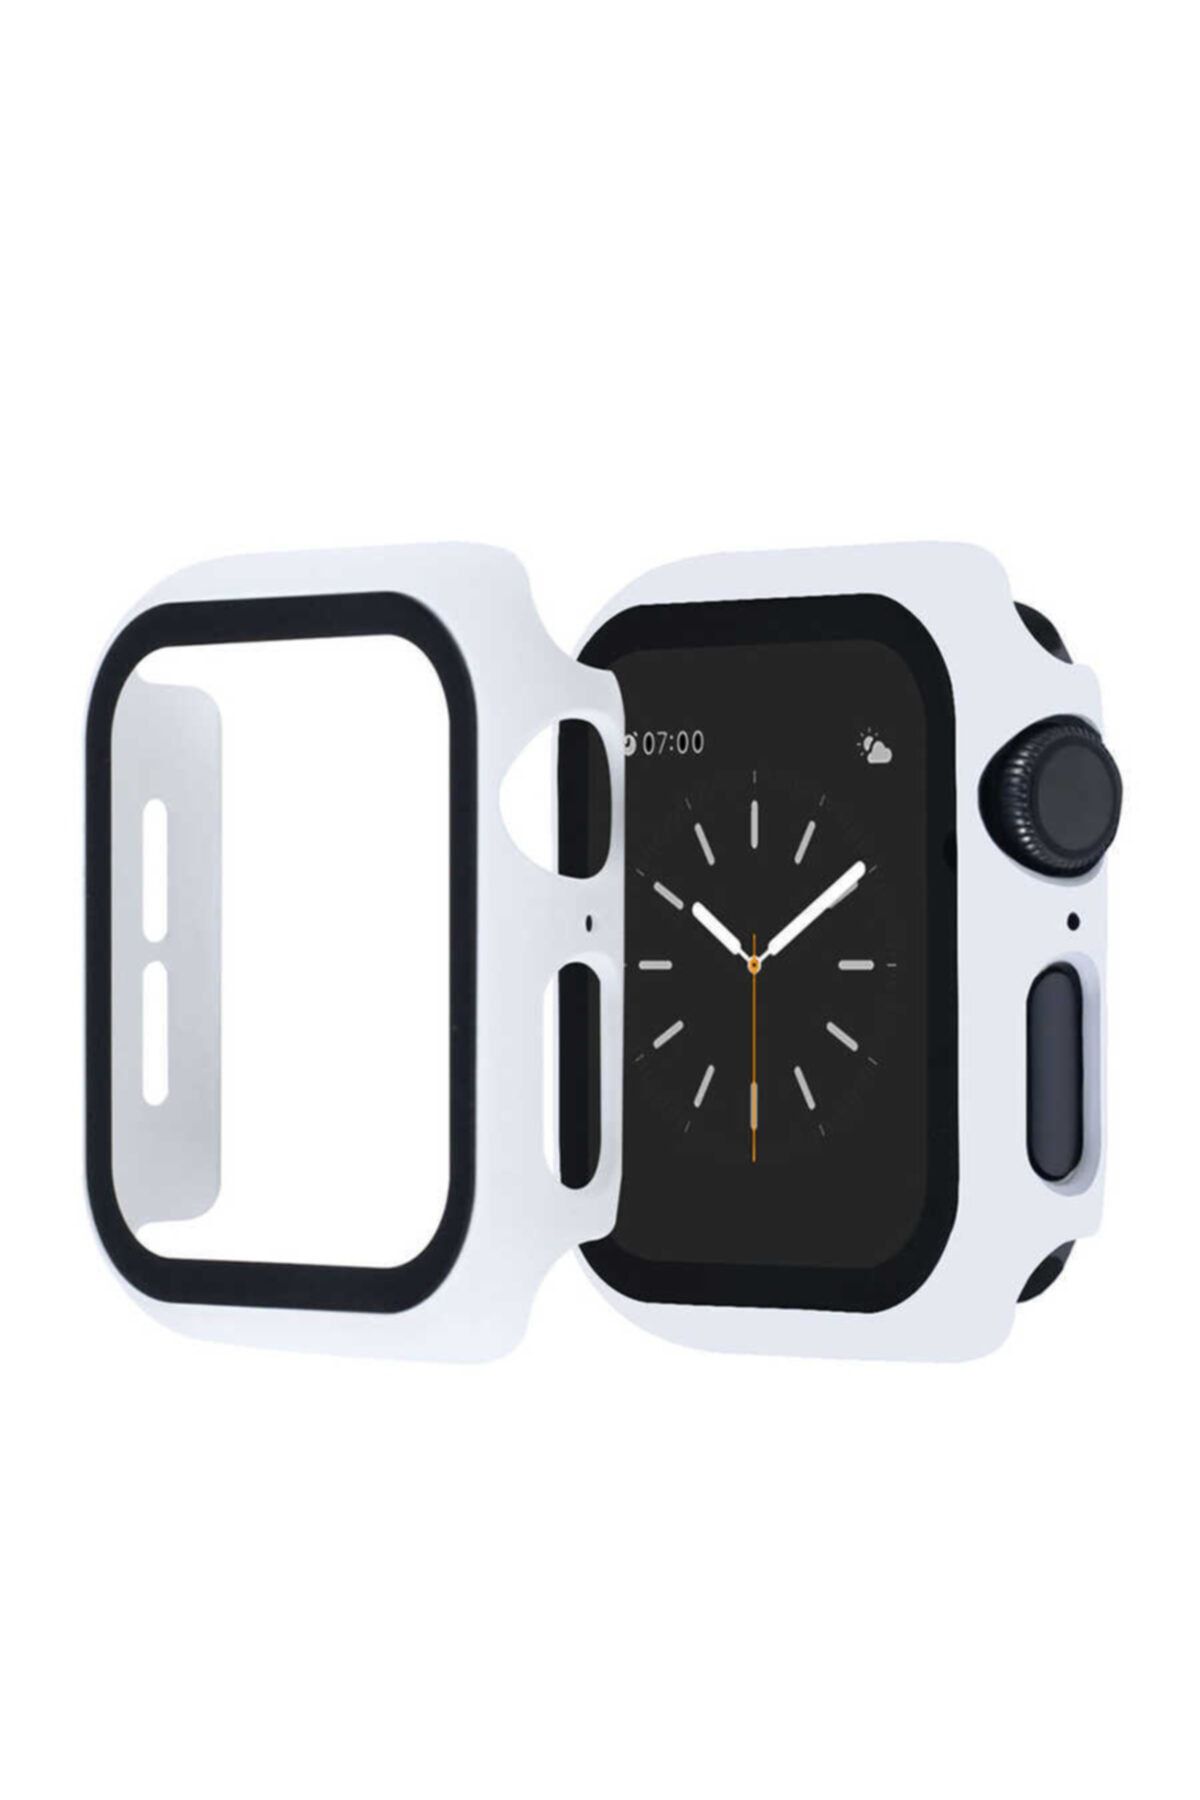 Nezih Case Apple Watch Seri 2 3 4 5 6 Se 44mm Kasa Ve Ekran Koruyucu 360 Tam Koruma Gard Beyaz